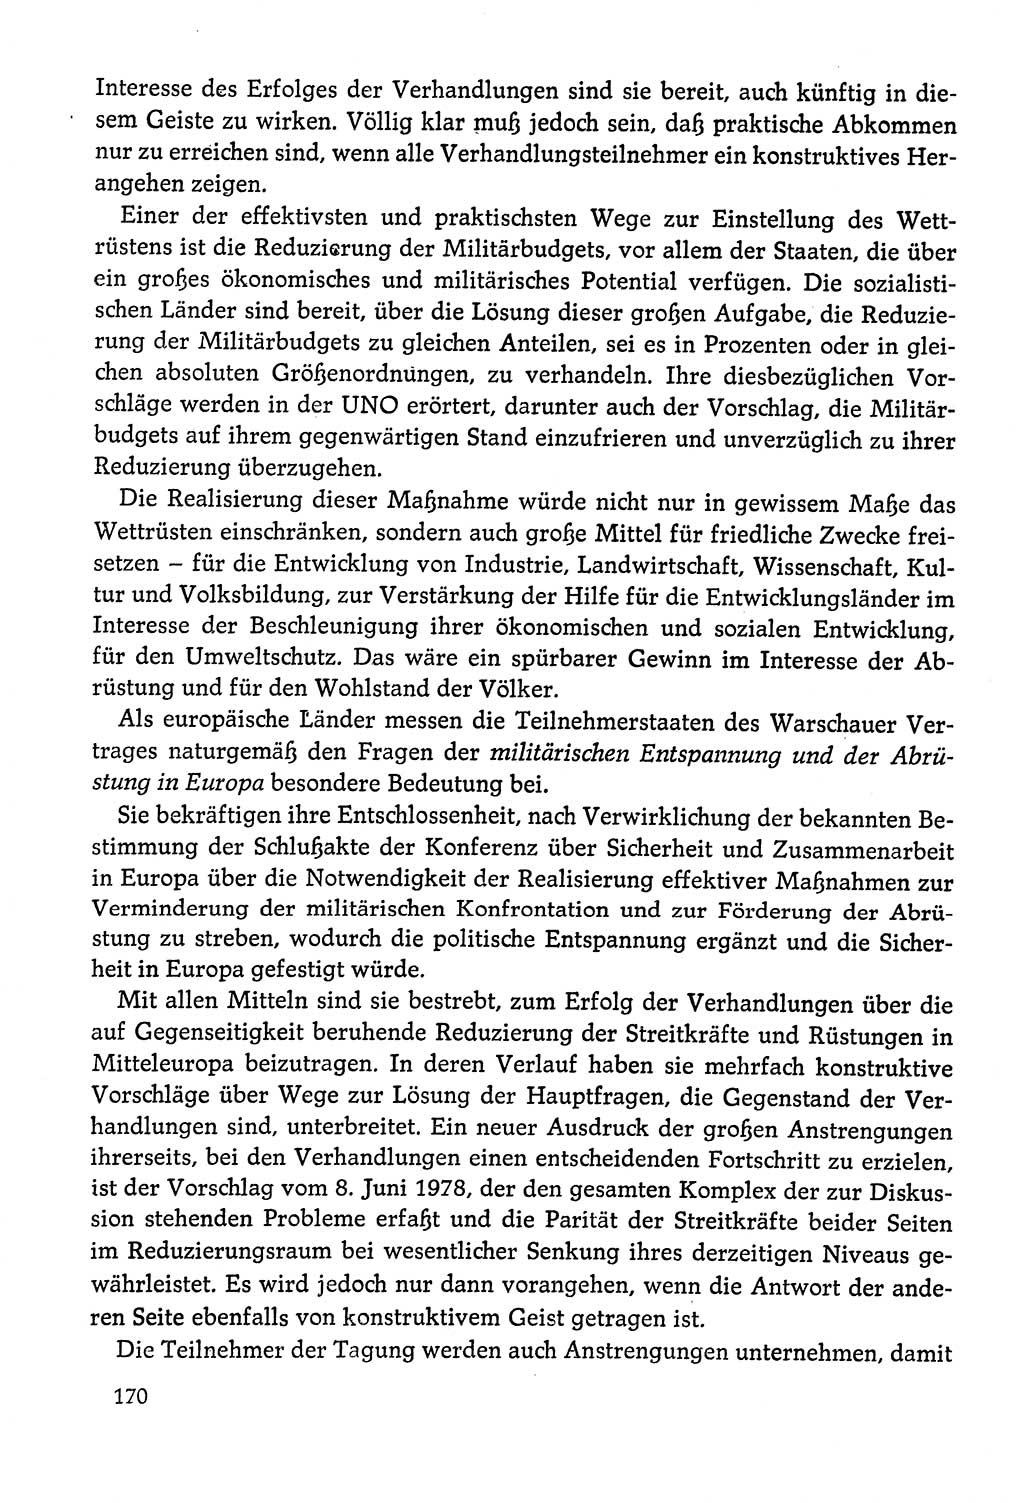 Dokumente der Sozialistischen Einheitspartei Deutschlands (SED) [Deutsche Demokratische Republik (DDR)] 1978-1979, Seite 170 (Dok. SED DDR 1978-1979, S. 170)